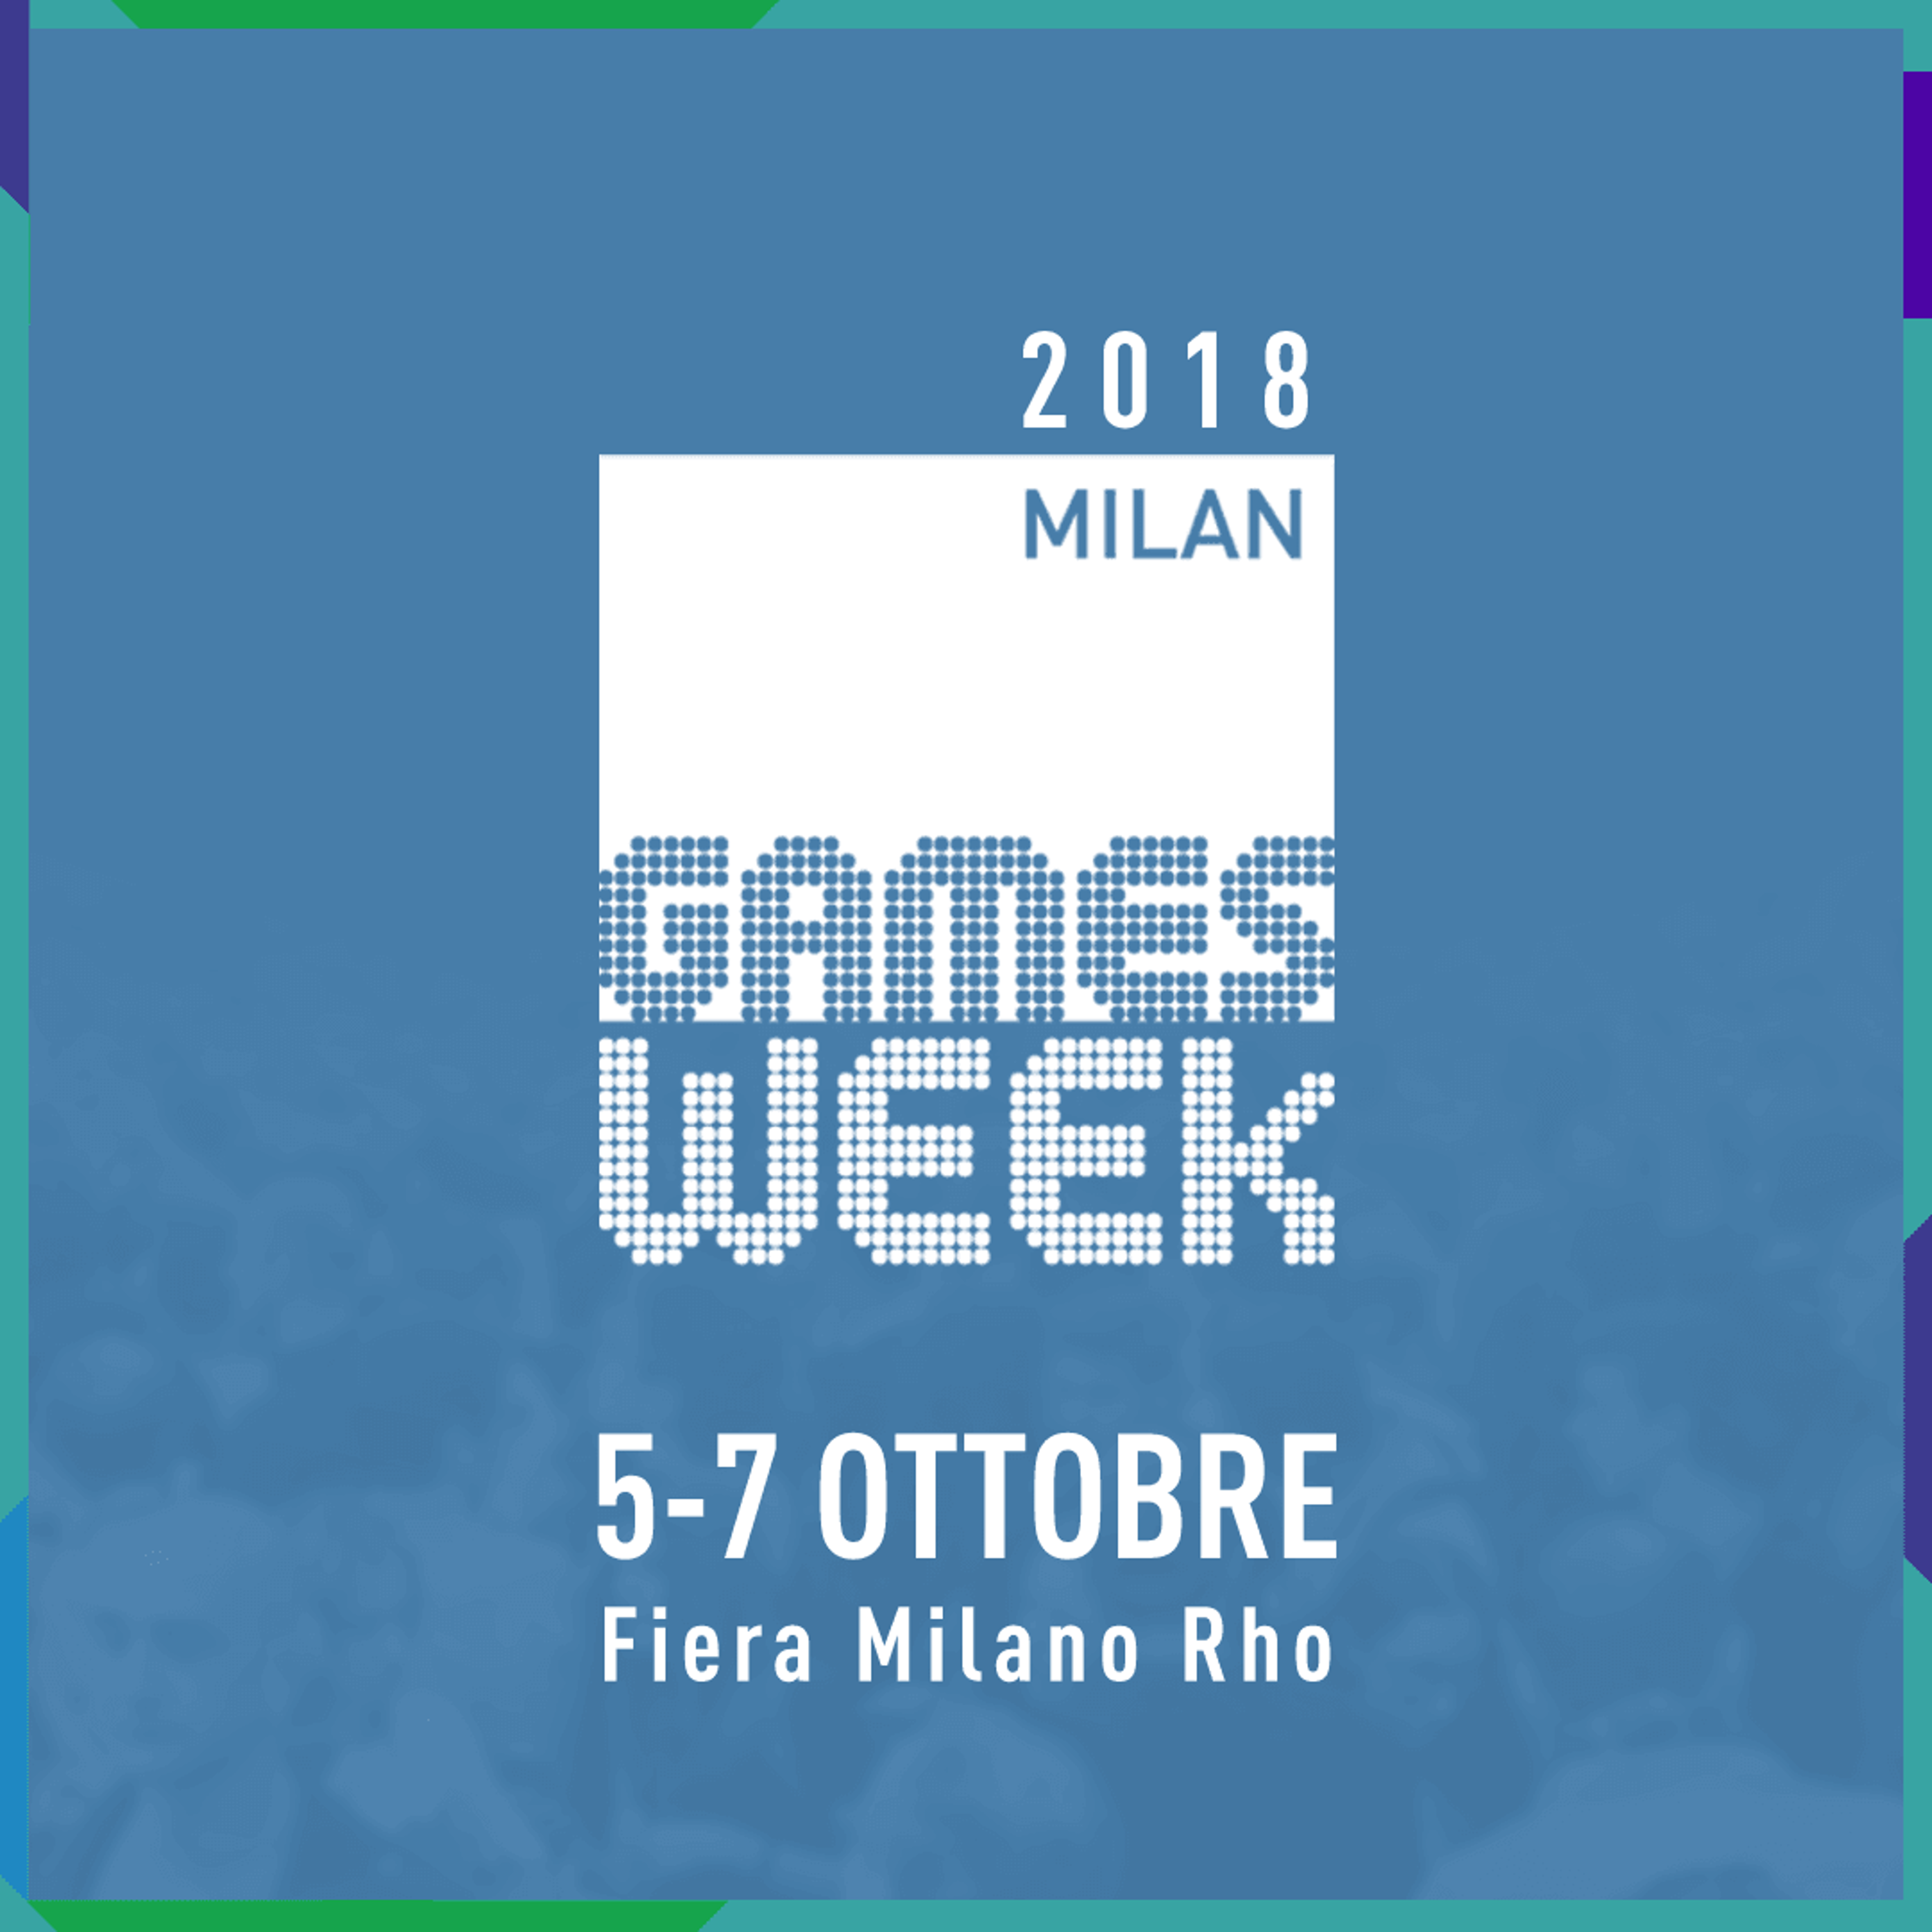 MILAN GAMES WEEK 2018, OGGI LA PRESENTAZIONE AL CASTELLO SFORZESCO